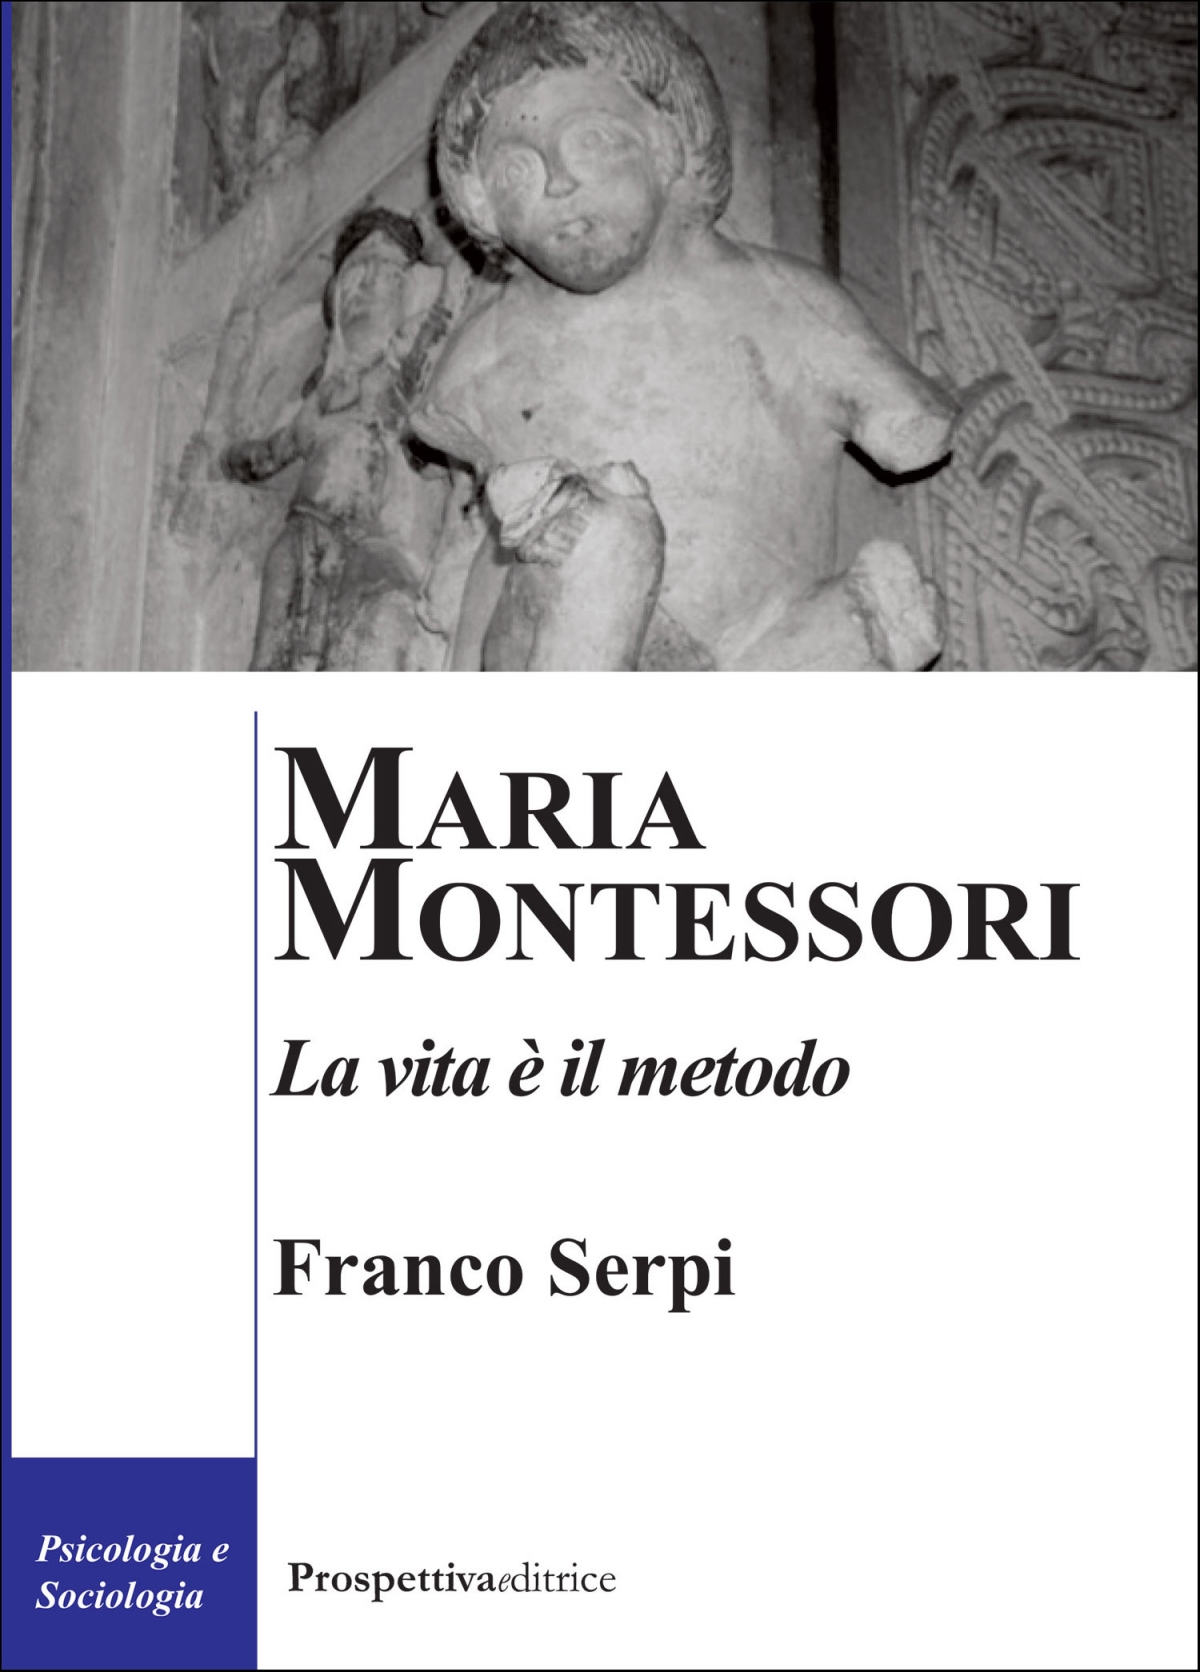 Maria Montessori. La vita è il metodo